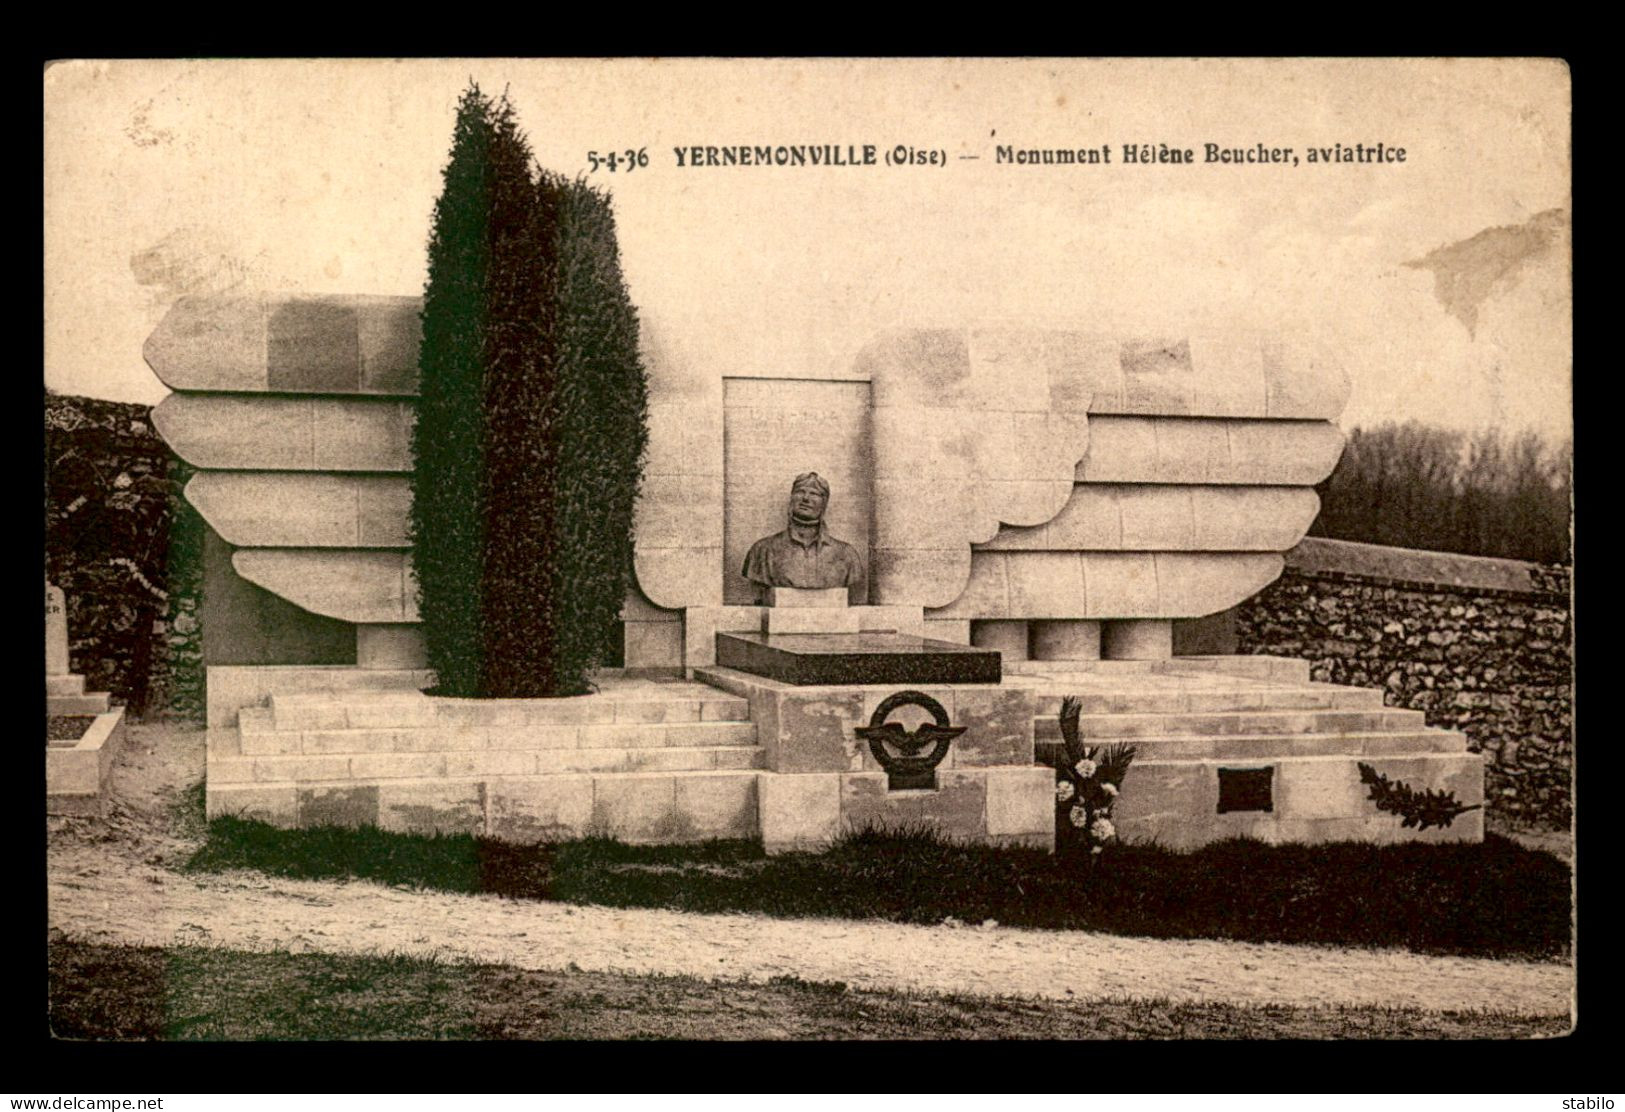 AVIATION - YERNEMONVILLE - MONUMENT D'HELENE BOUCHER - Flieger